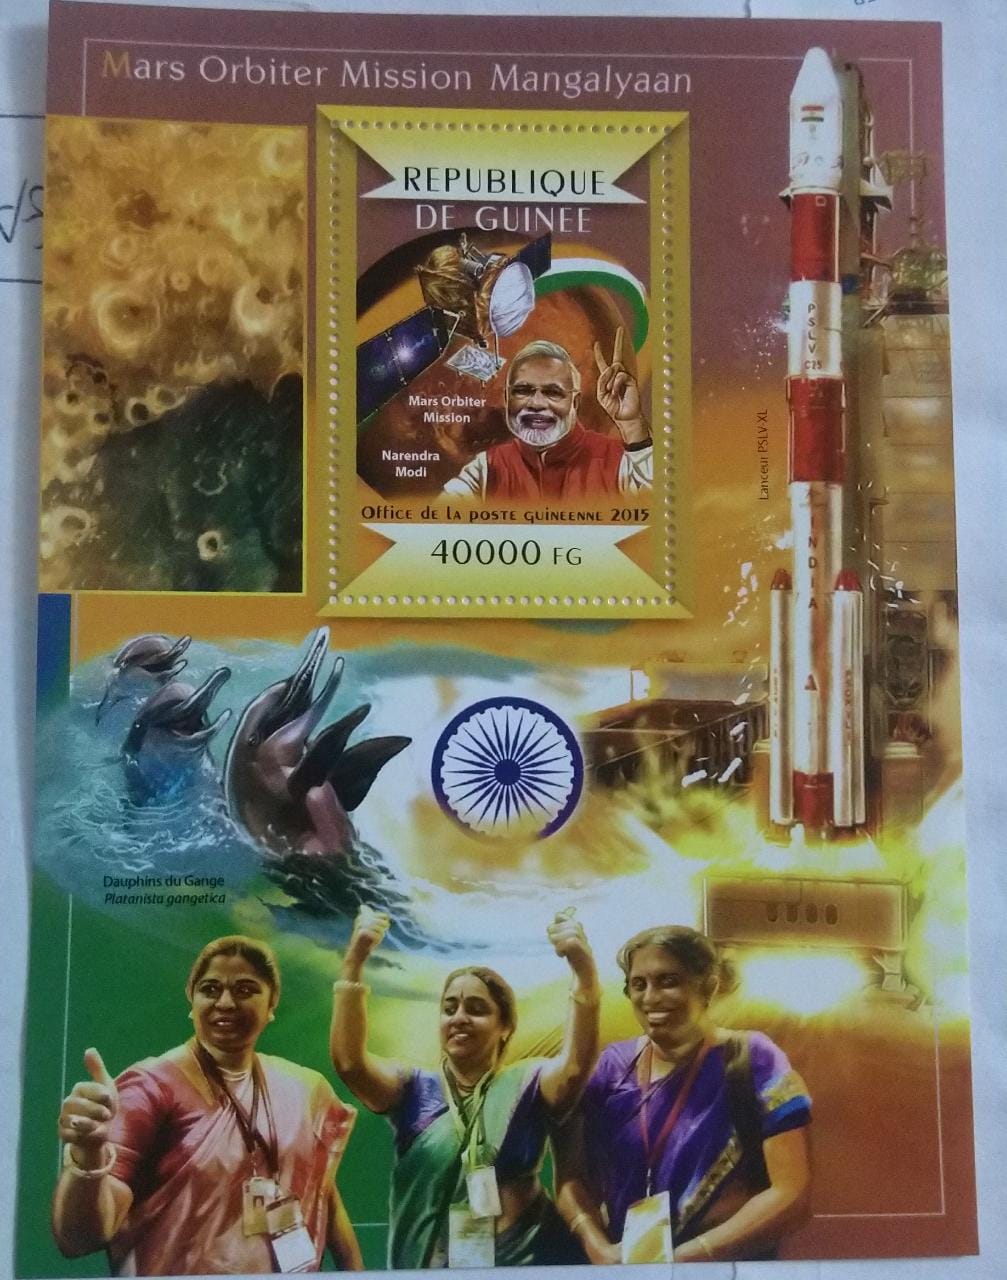 गिनी ने भारत के सफल मंगलयान मिशन पर एक एमएस जारी किया।